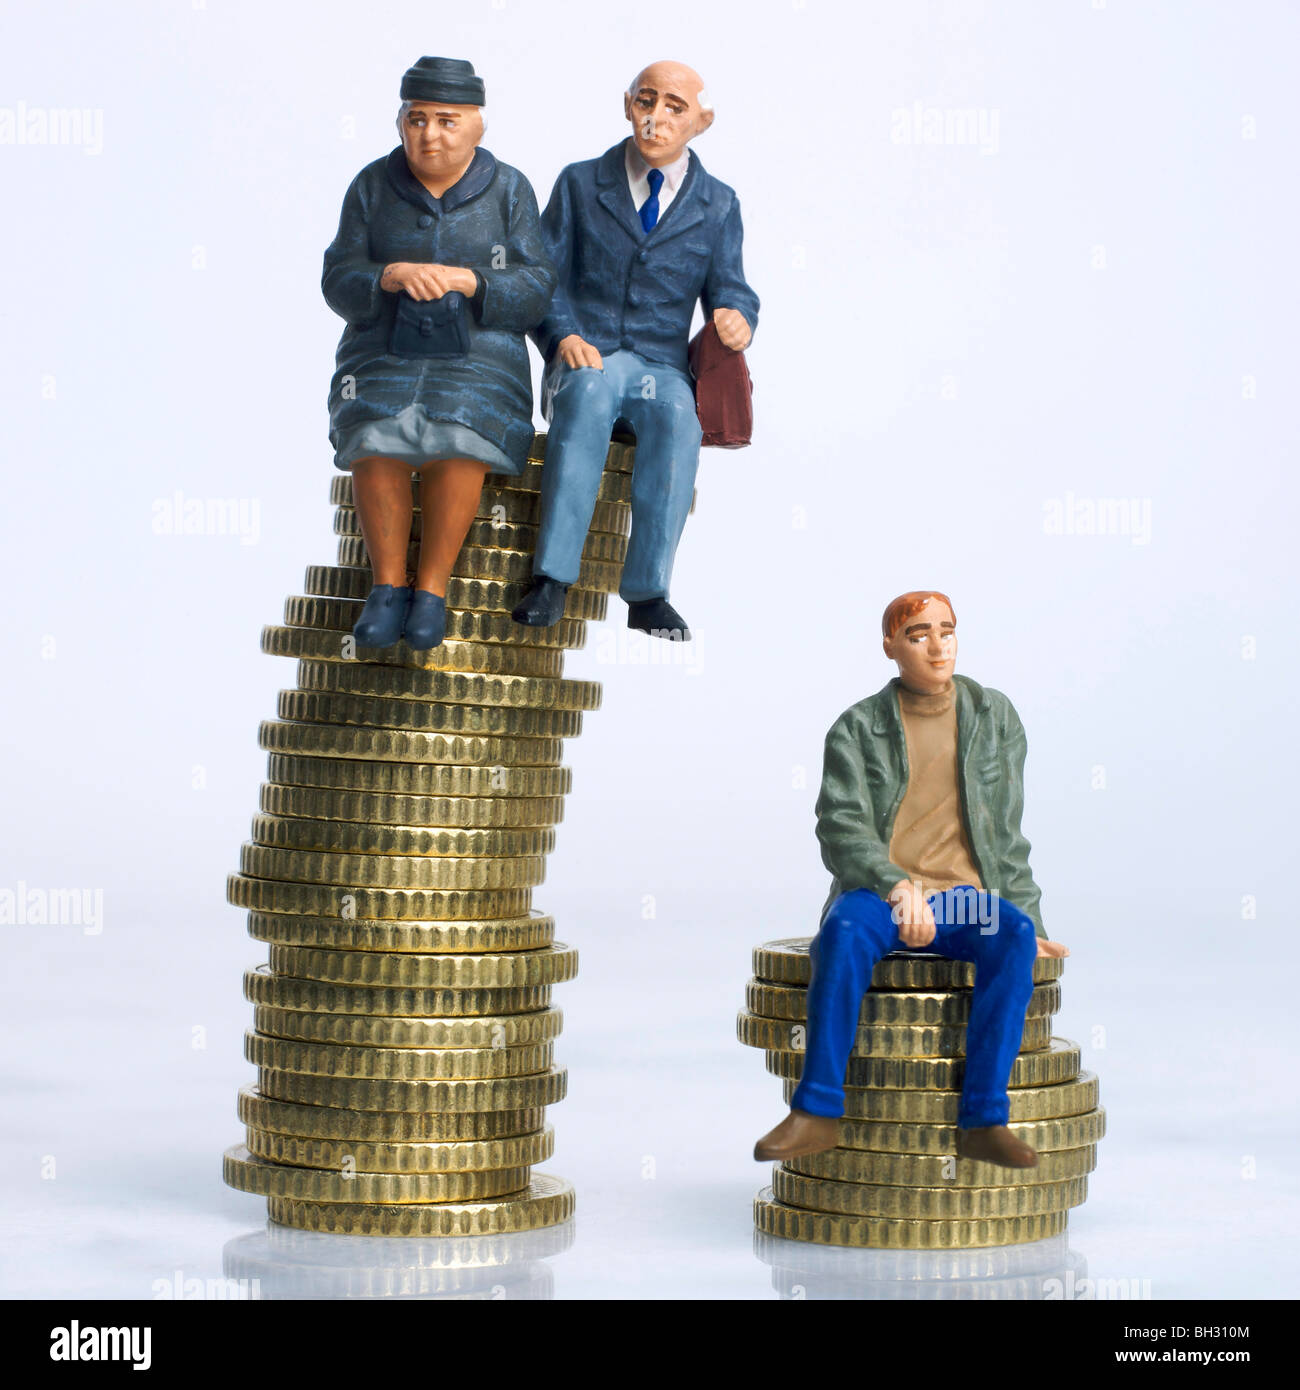 Alt und jung Figuren sitzen auf Münzen - Vererbung / Unterschiede in Einsparungen / Rente Geld / alte v junge Einkommen-Konzept Stockfoto